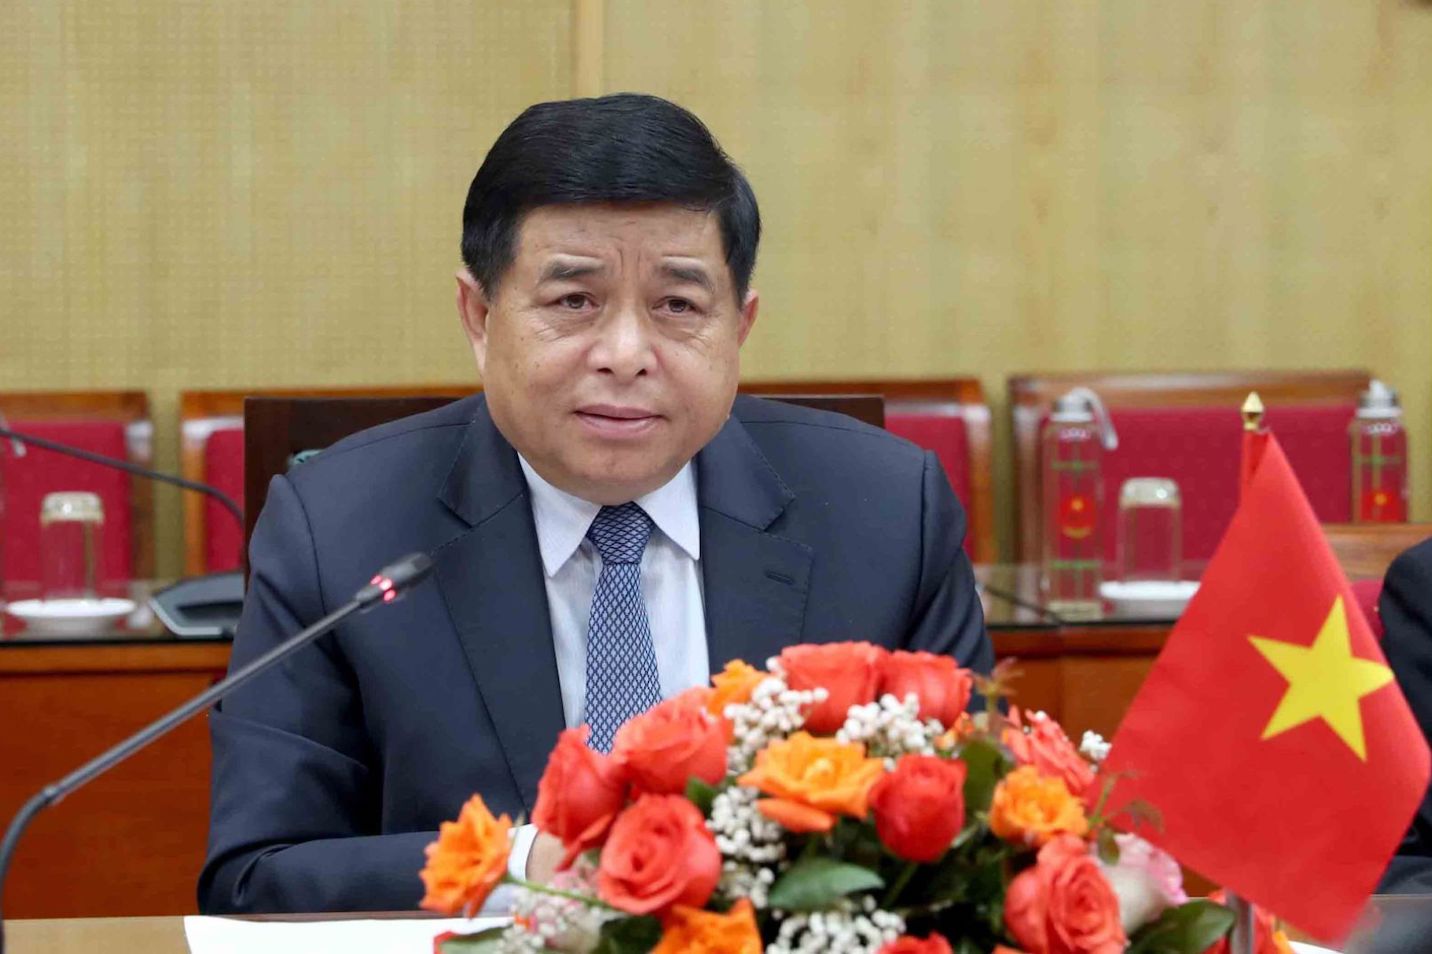 Bộ trưởng Nguyễn Chí Dũng nhấn mạnh 3 đột phá chiến lược được Đảng, Nhà nước quyết tâm, nỗ lực thực hiện trong bối cảnh này là rất đúng và trúng. Ảnh: MPI 